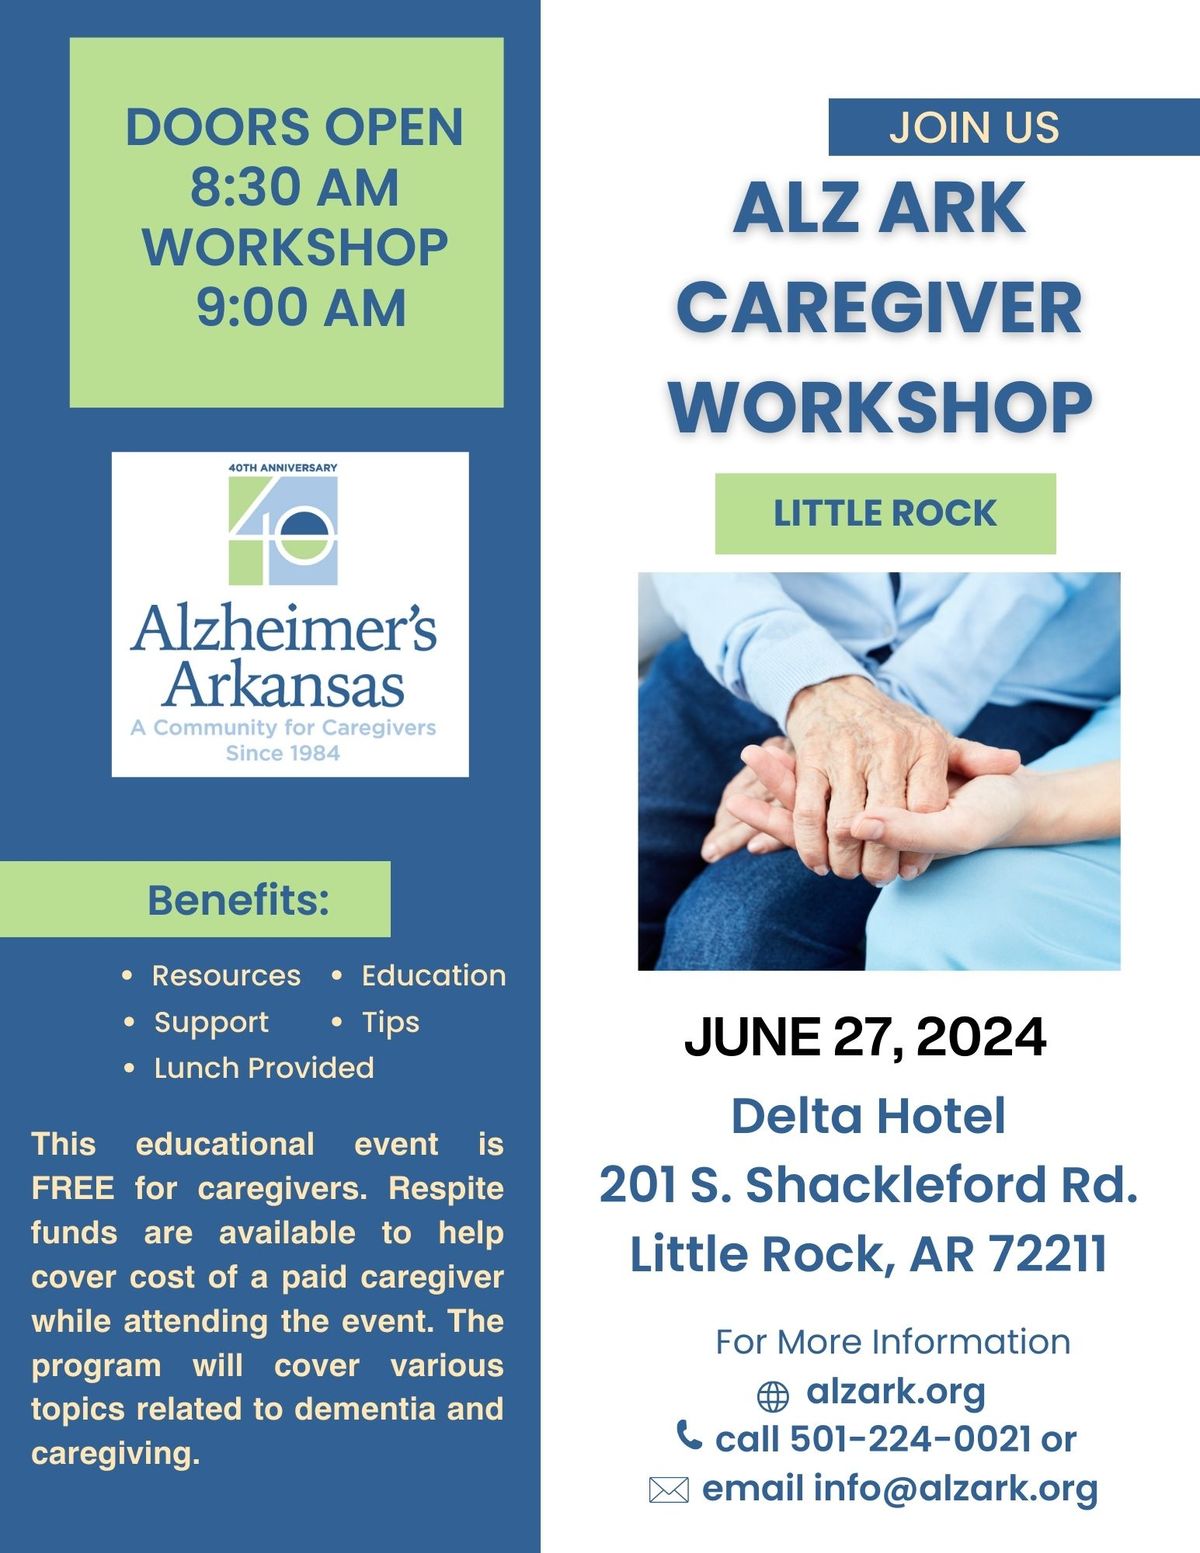 AlzARK Caregiver Workshop